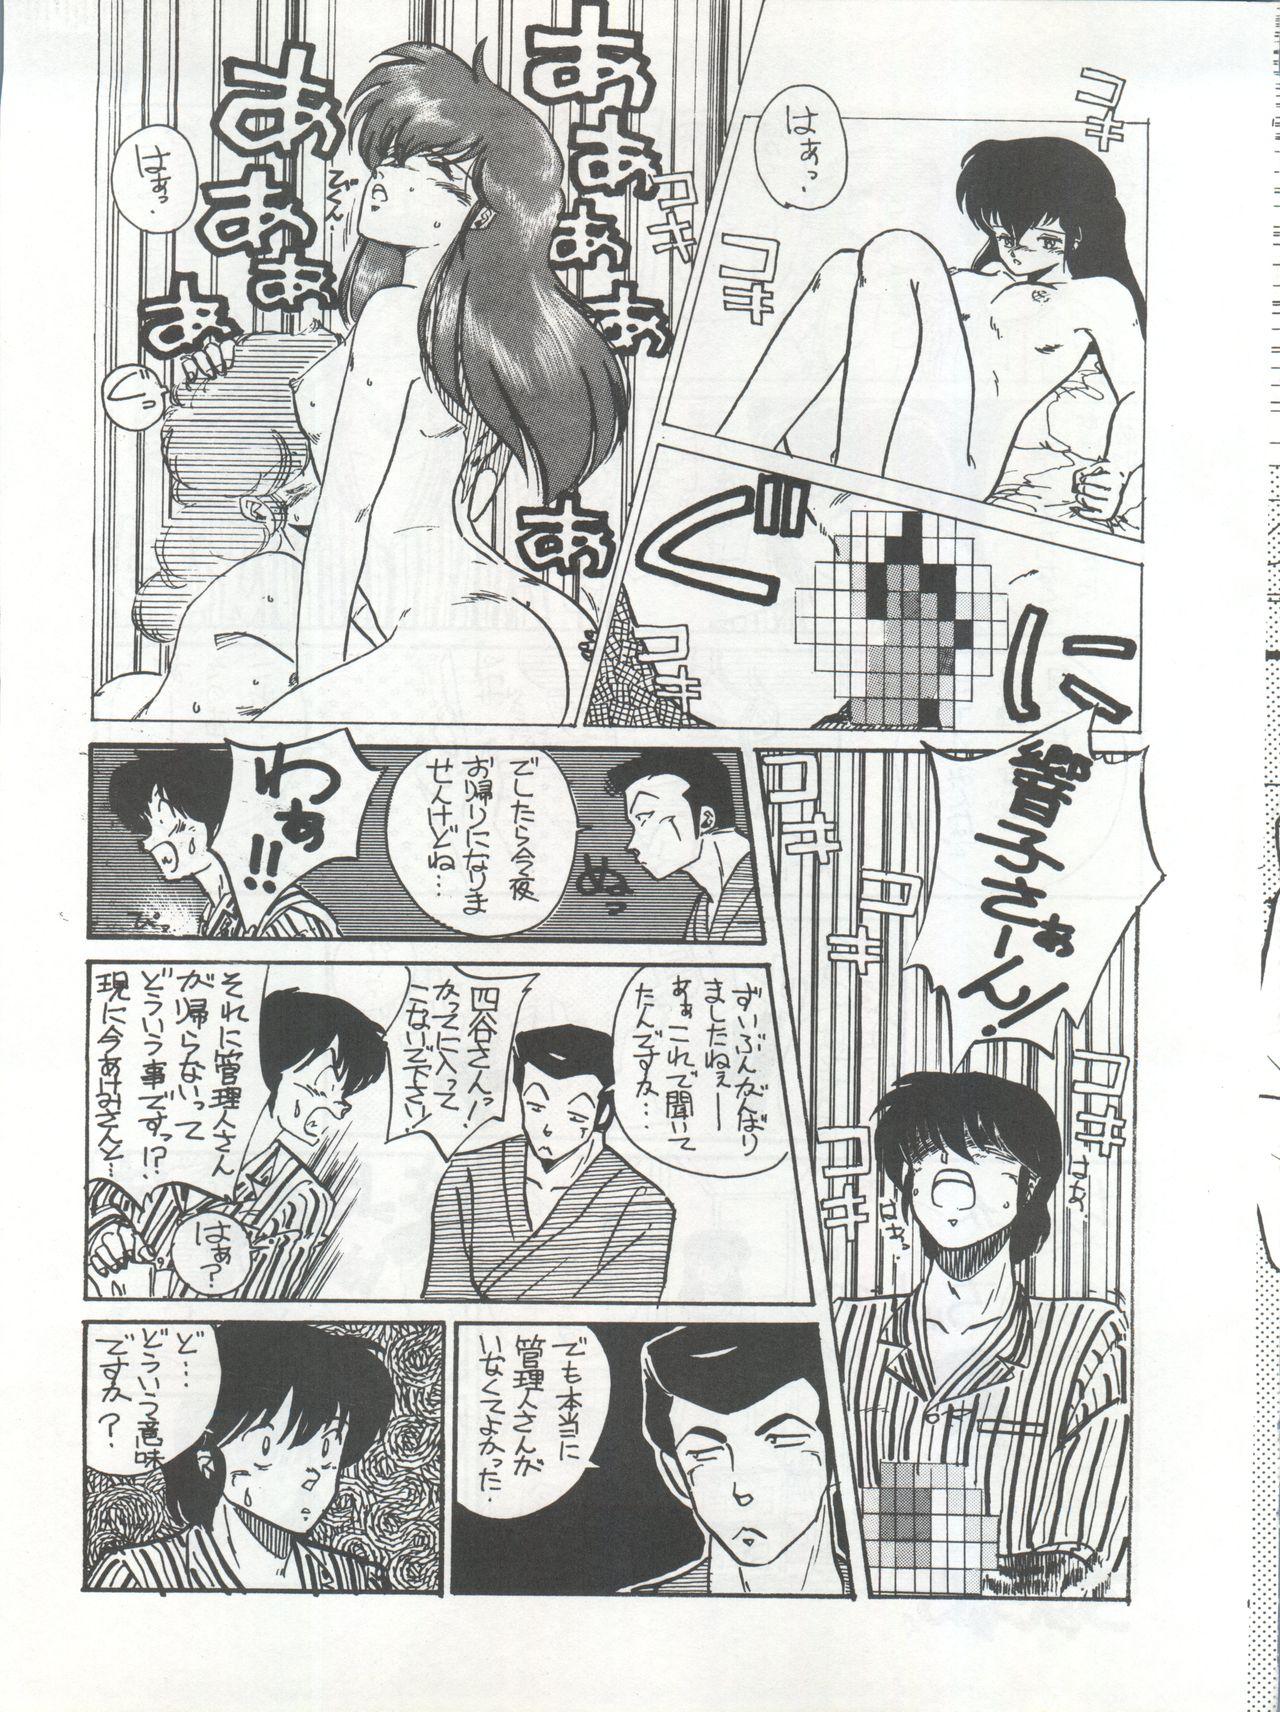 X Ikkoku-kan 0 Gou Shitsu Part III - Maison ikkoku Masturbating - Page 11